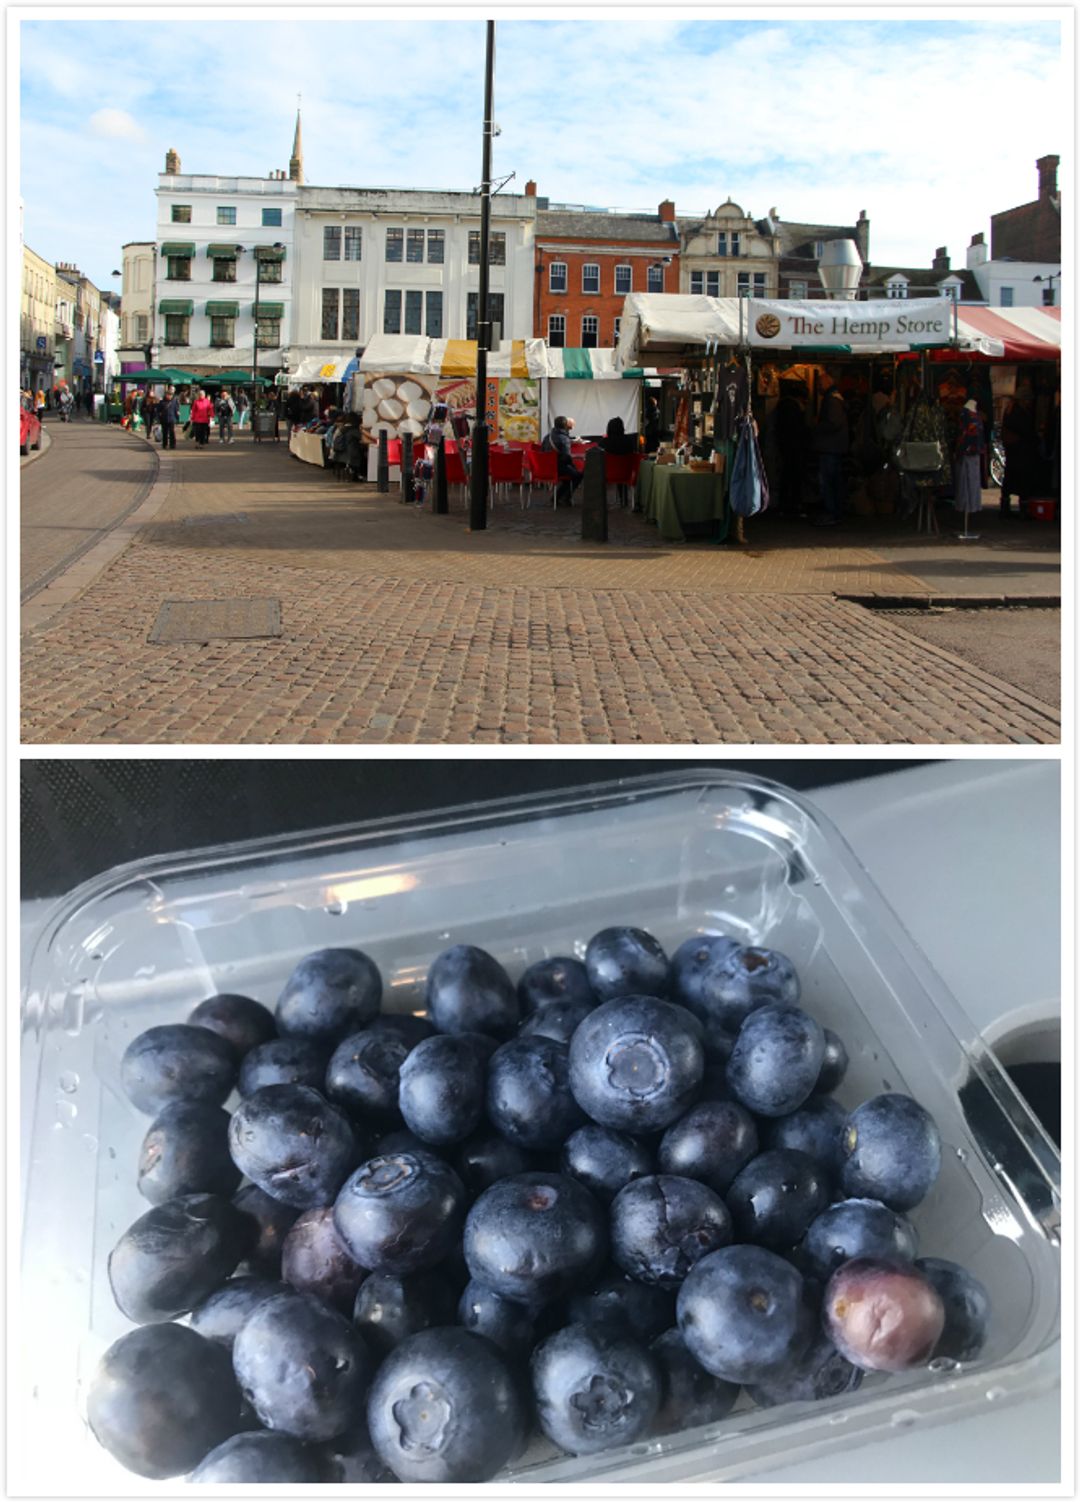 劍橋市集Cambridge Market Square，藍莓1英鎊/盒，便宜又Juicy！